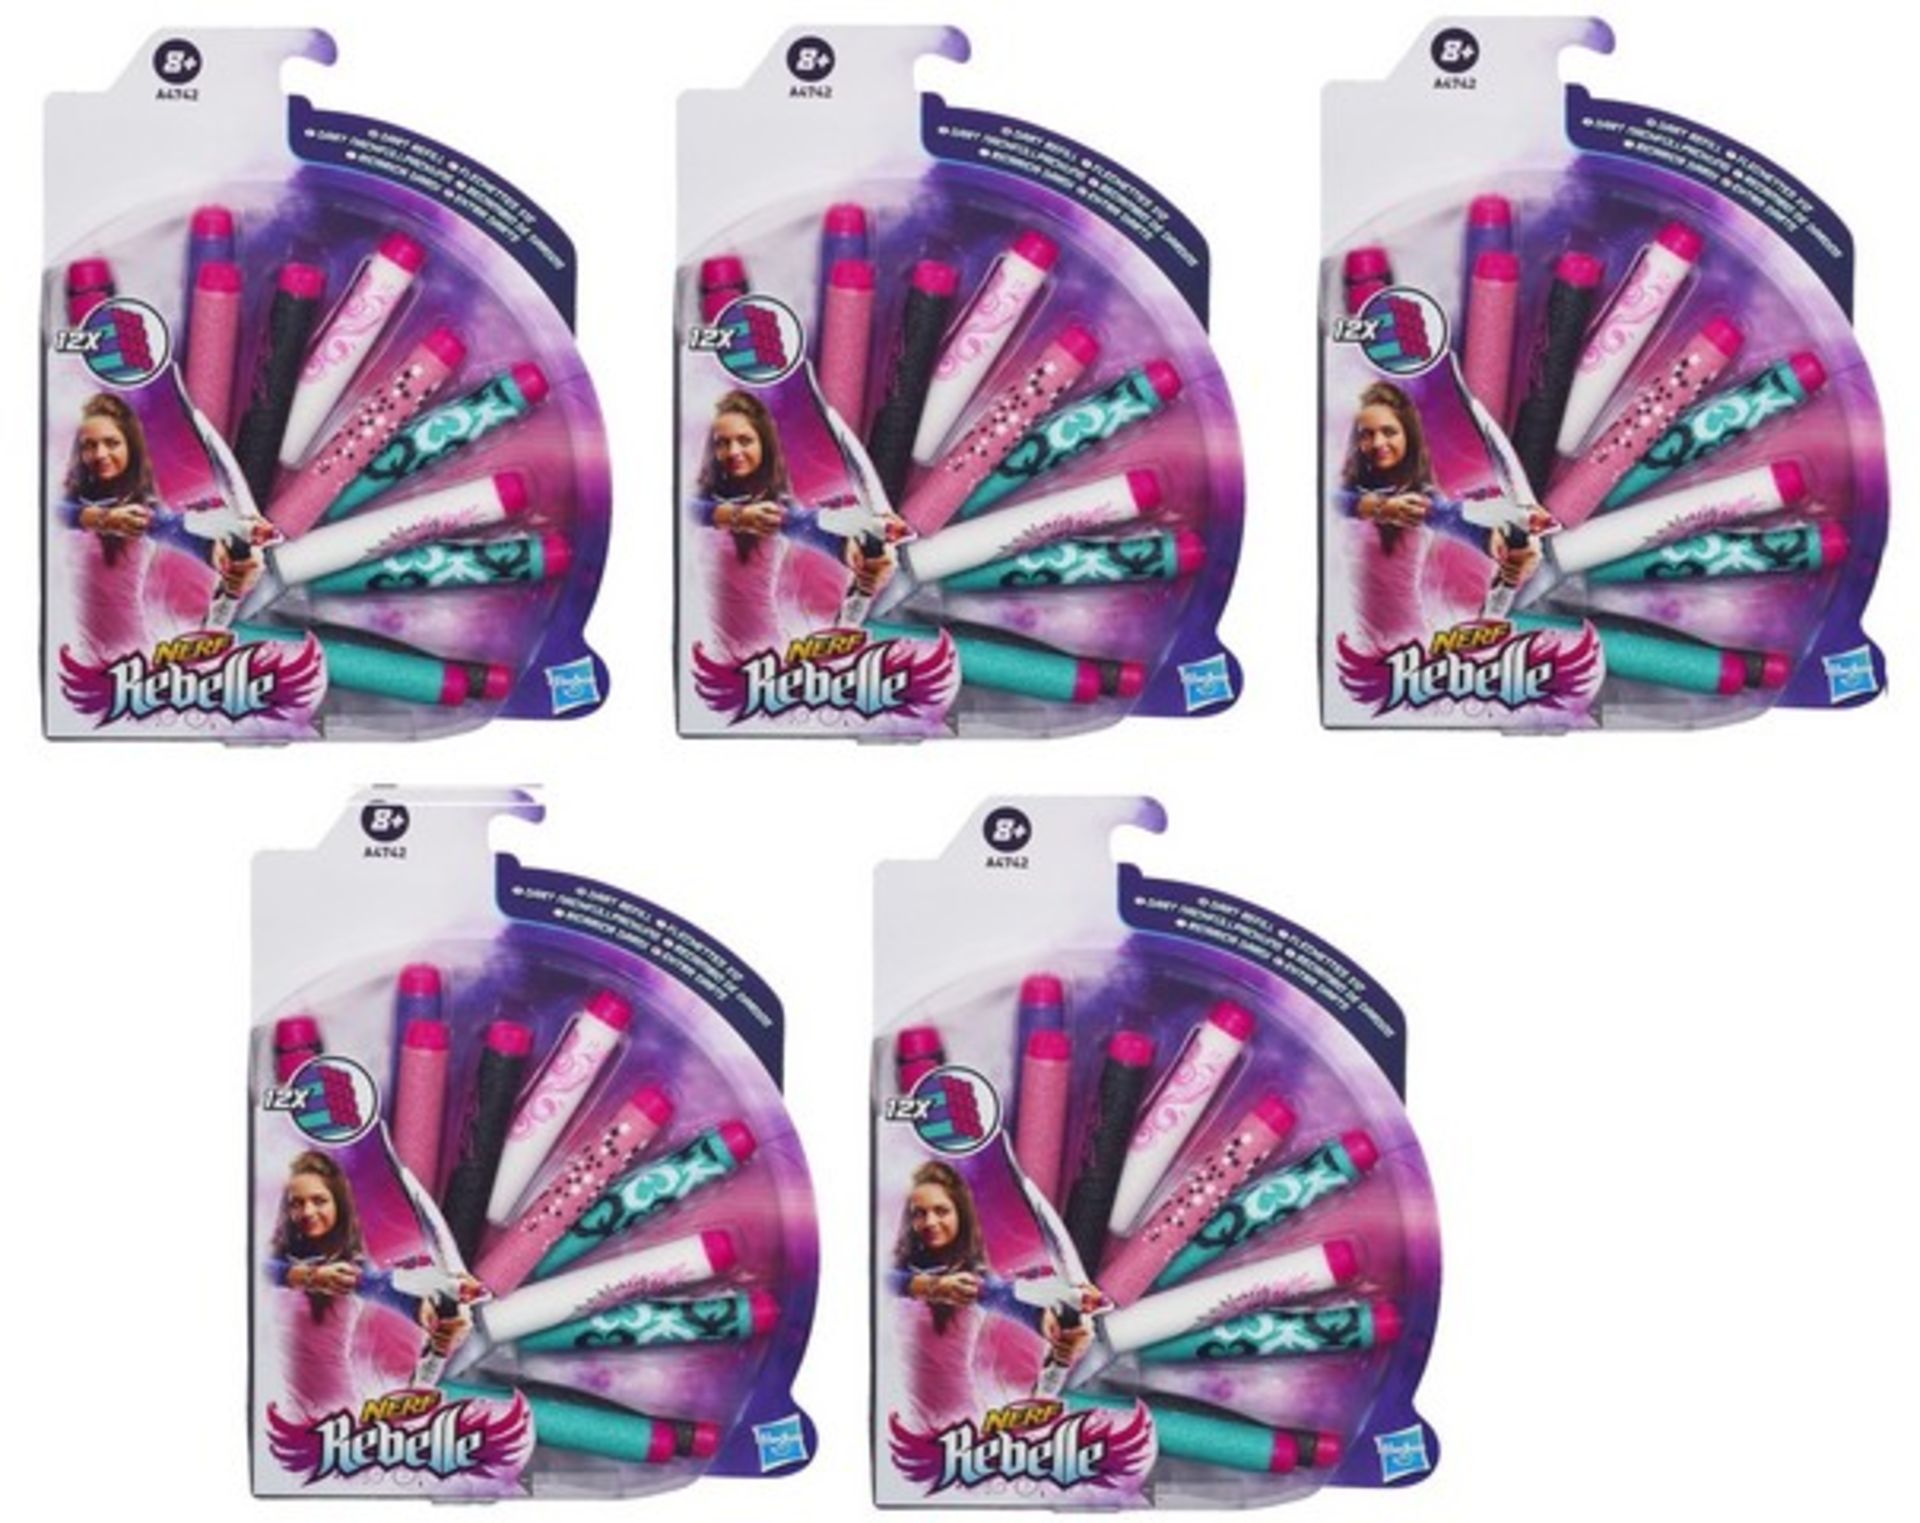 + VAT Brand New 5 Packs Hasbro Nerf Rebelle 12 x Dart Refill - Amazon Price £37.85